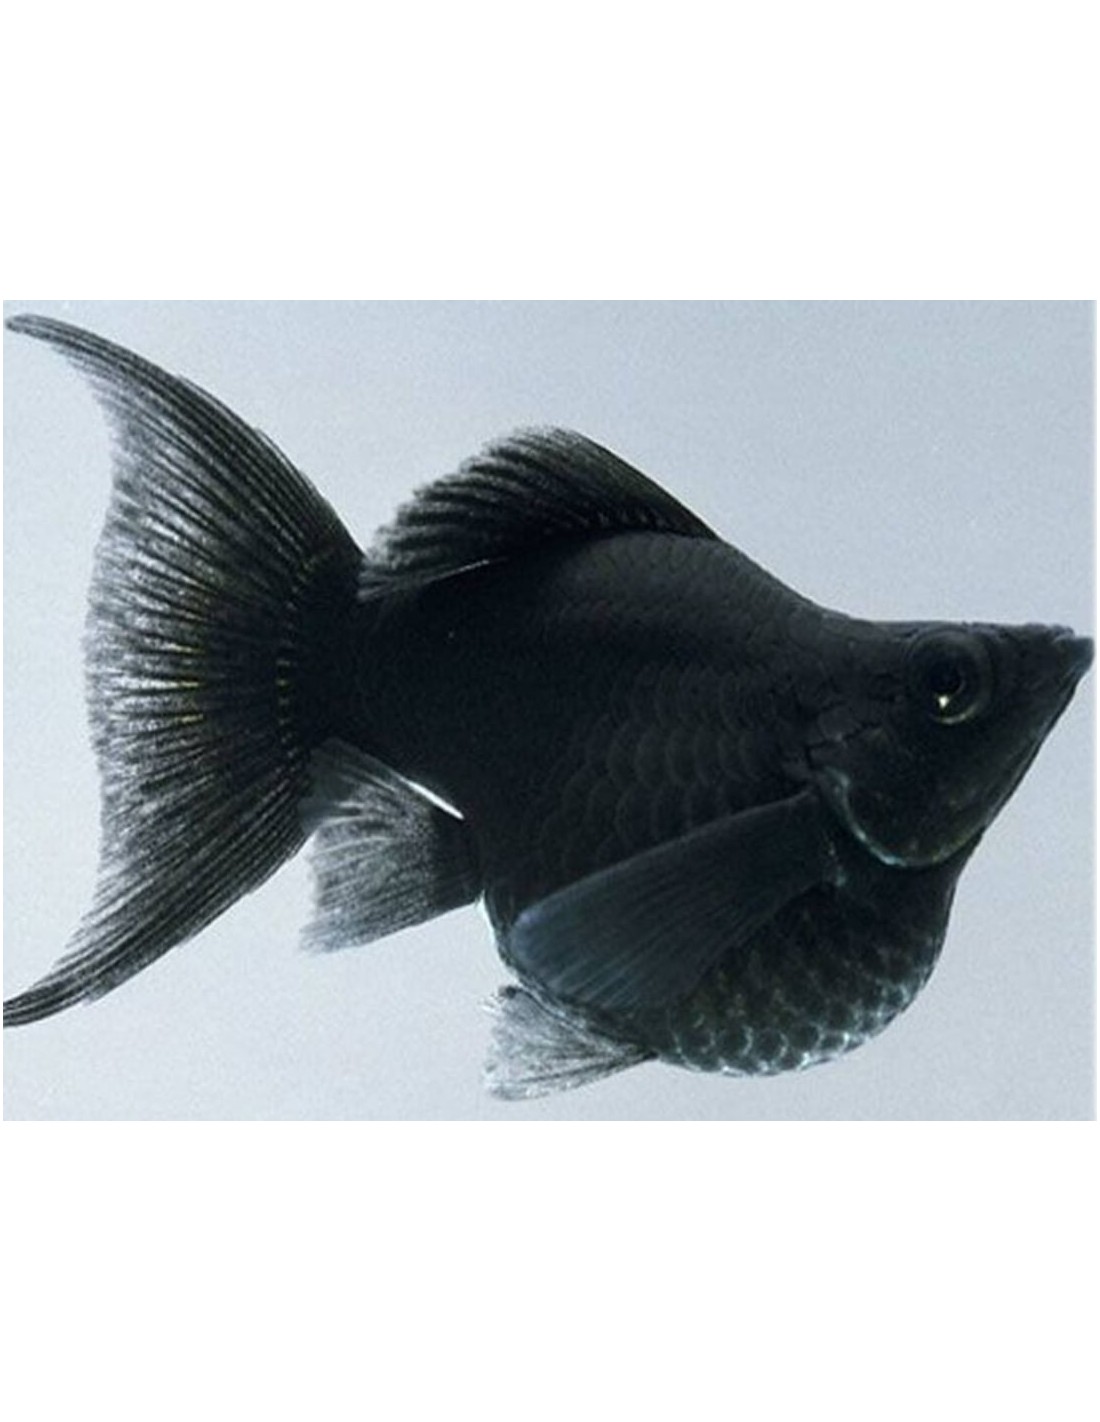 Черная рыба жив. Аквариумная рыбка Моллинезия черная. Чёрная Молли (Моллинезия). Рыбка Моллинезия черная. Молли аквариумная рыбка.